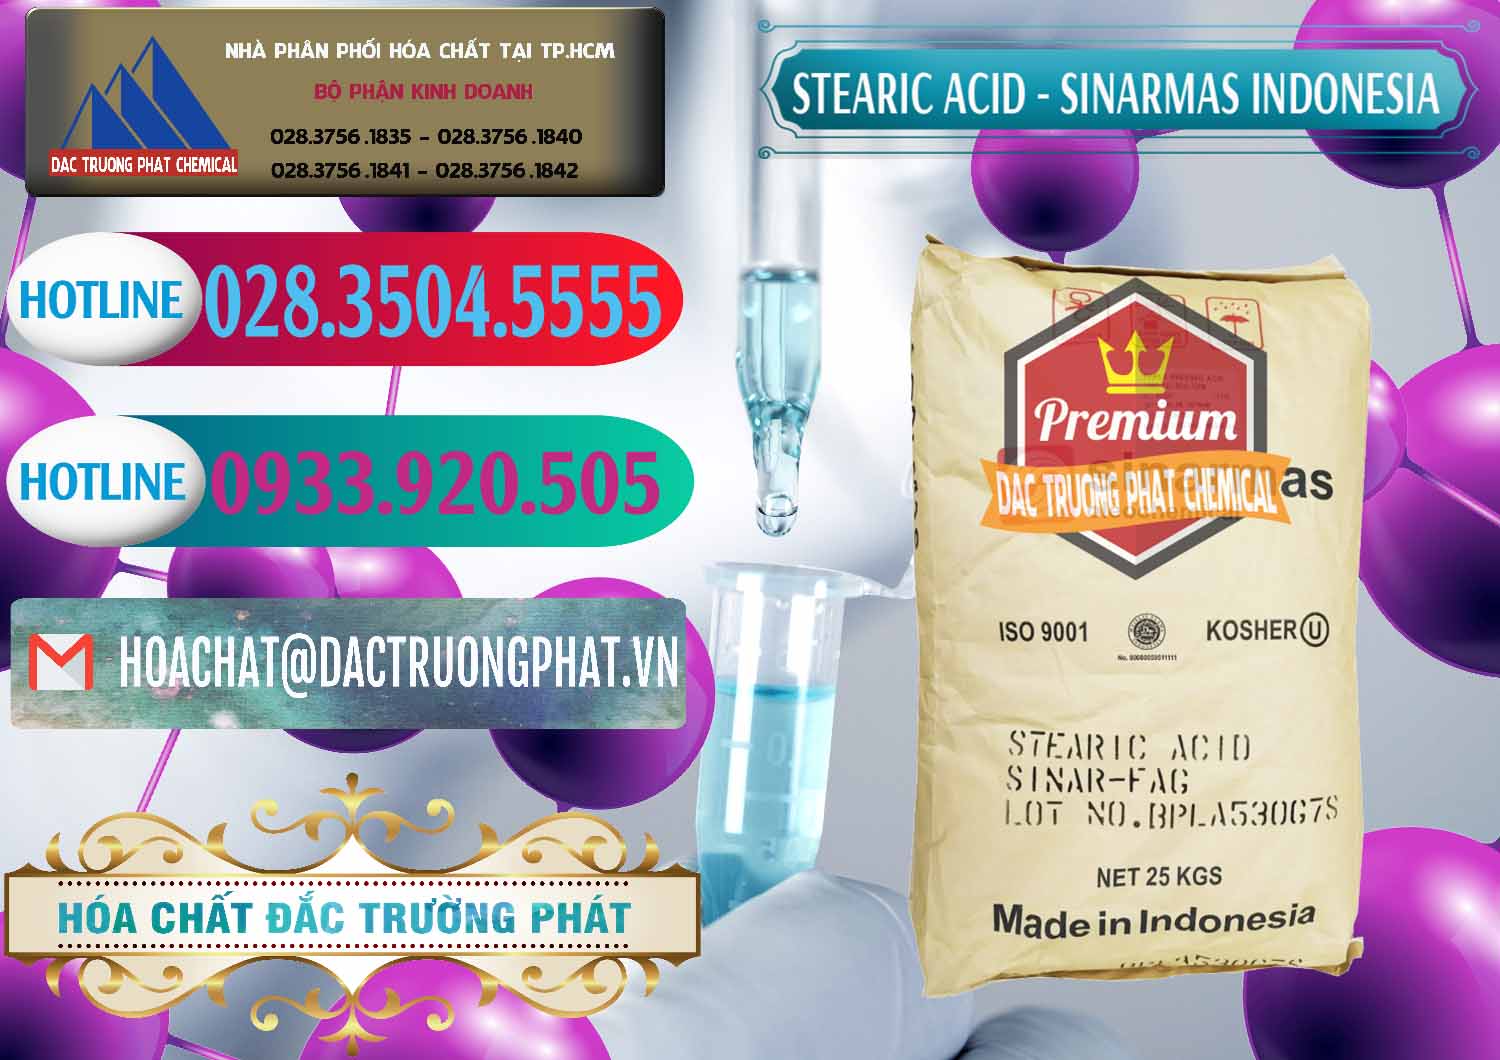 Cty chuyên phân phối & bán Axit Stearic - Stearic Acid Sinarmas Indonesia - 0389 - Phân phối & nhập khẩu hóa chất tại TP.HCM - truongphat.vn